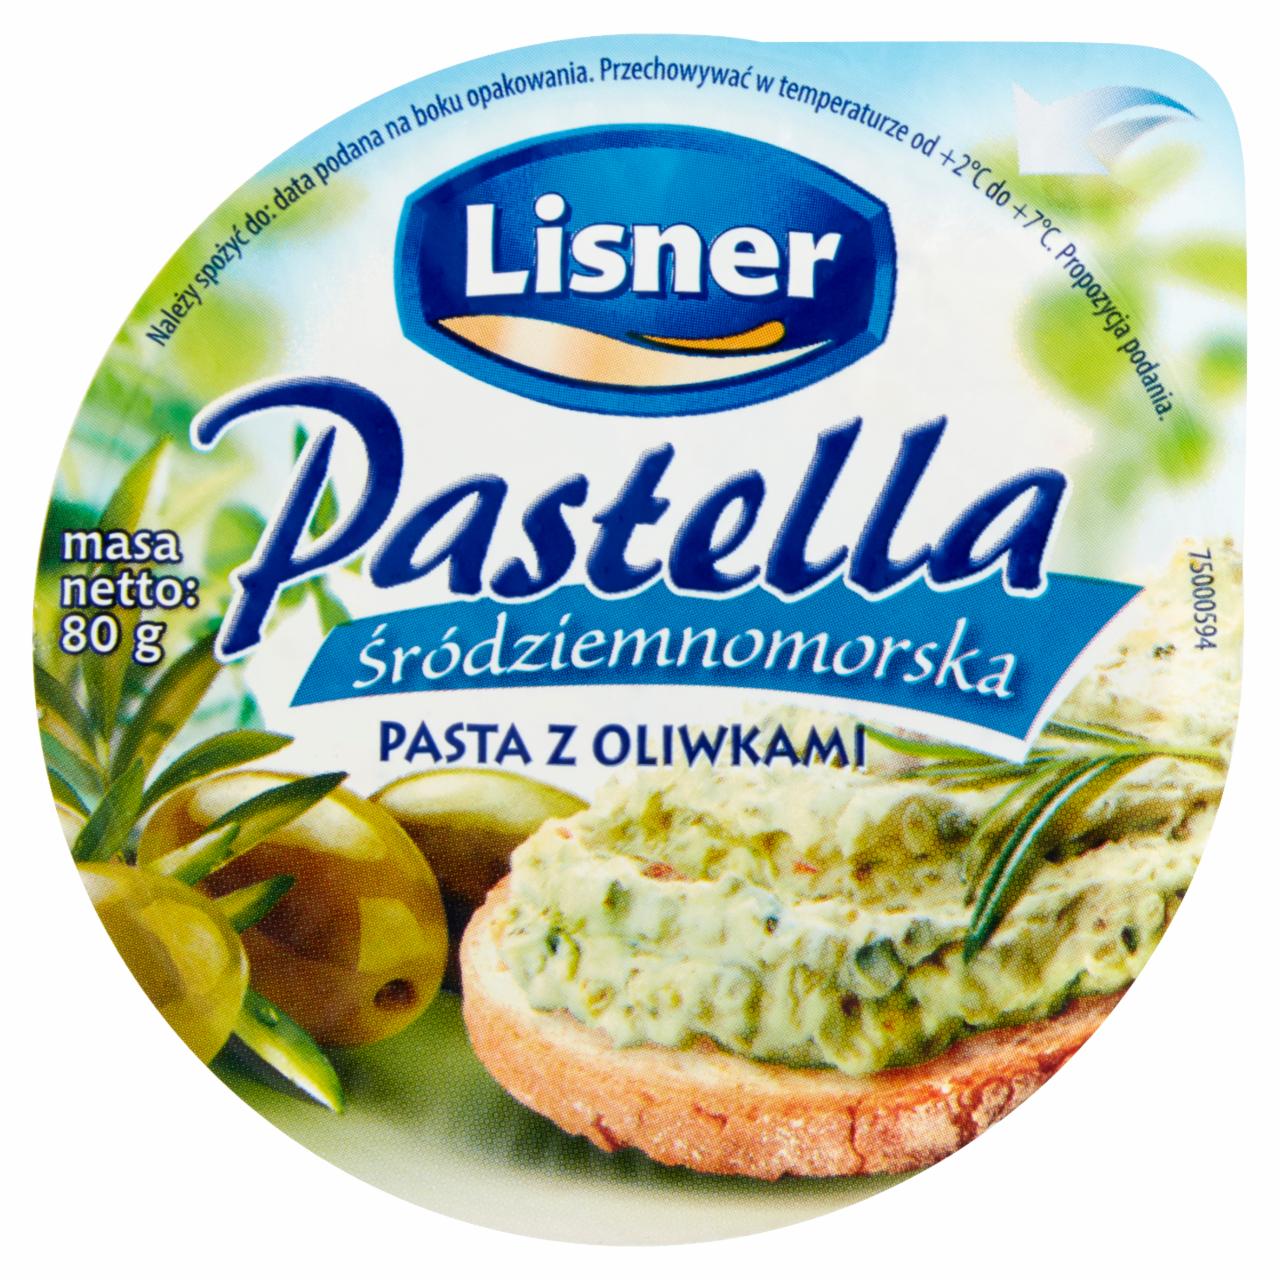 Zdjęcia - Lisner Pastella Śródziemnomorska Pasta z oliwkami 80 g